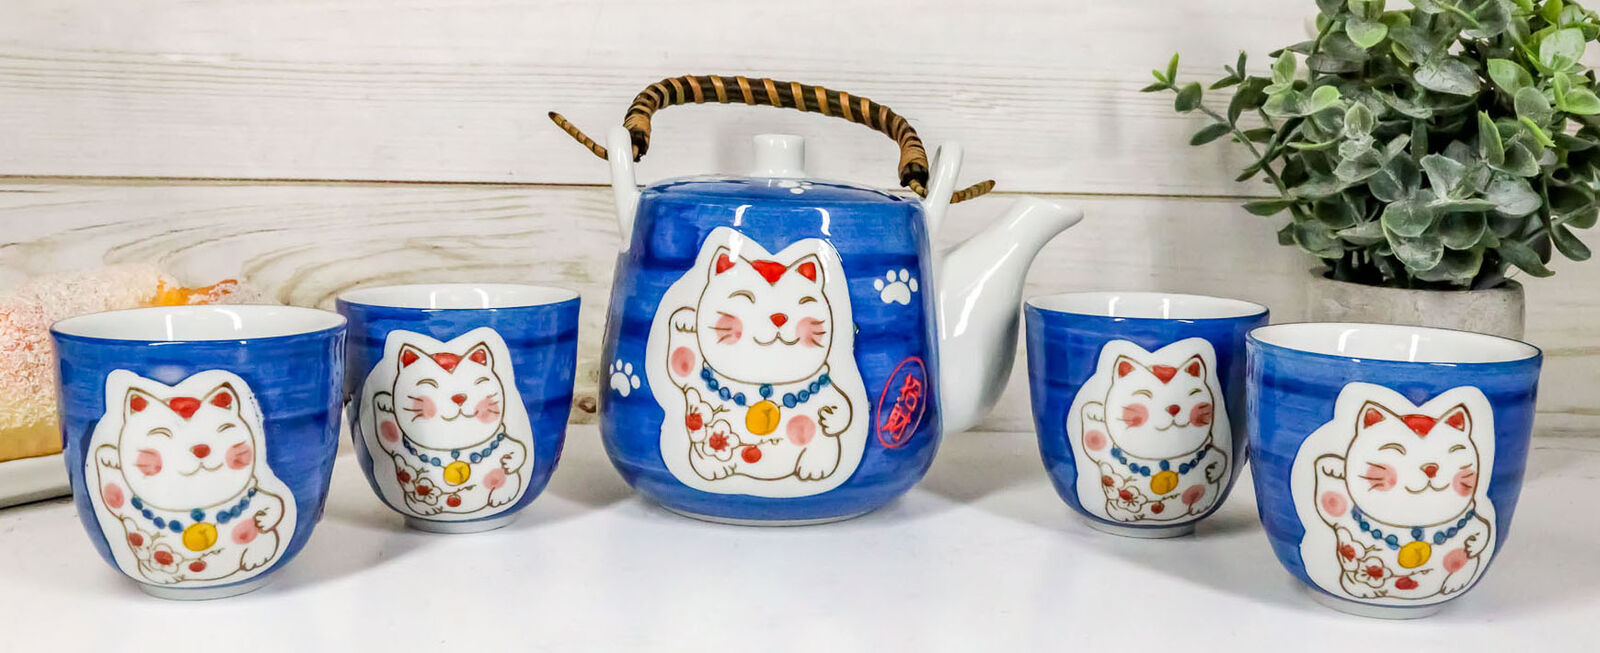 Ebros Japanese Maneki Neko Lucky Charm Cat Blue Tea Pot and Cups Set Serves 4